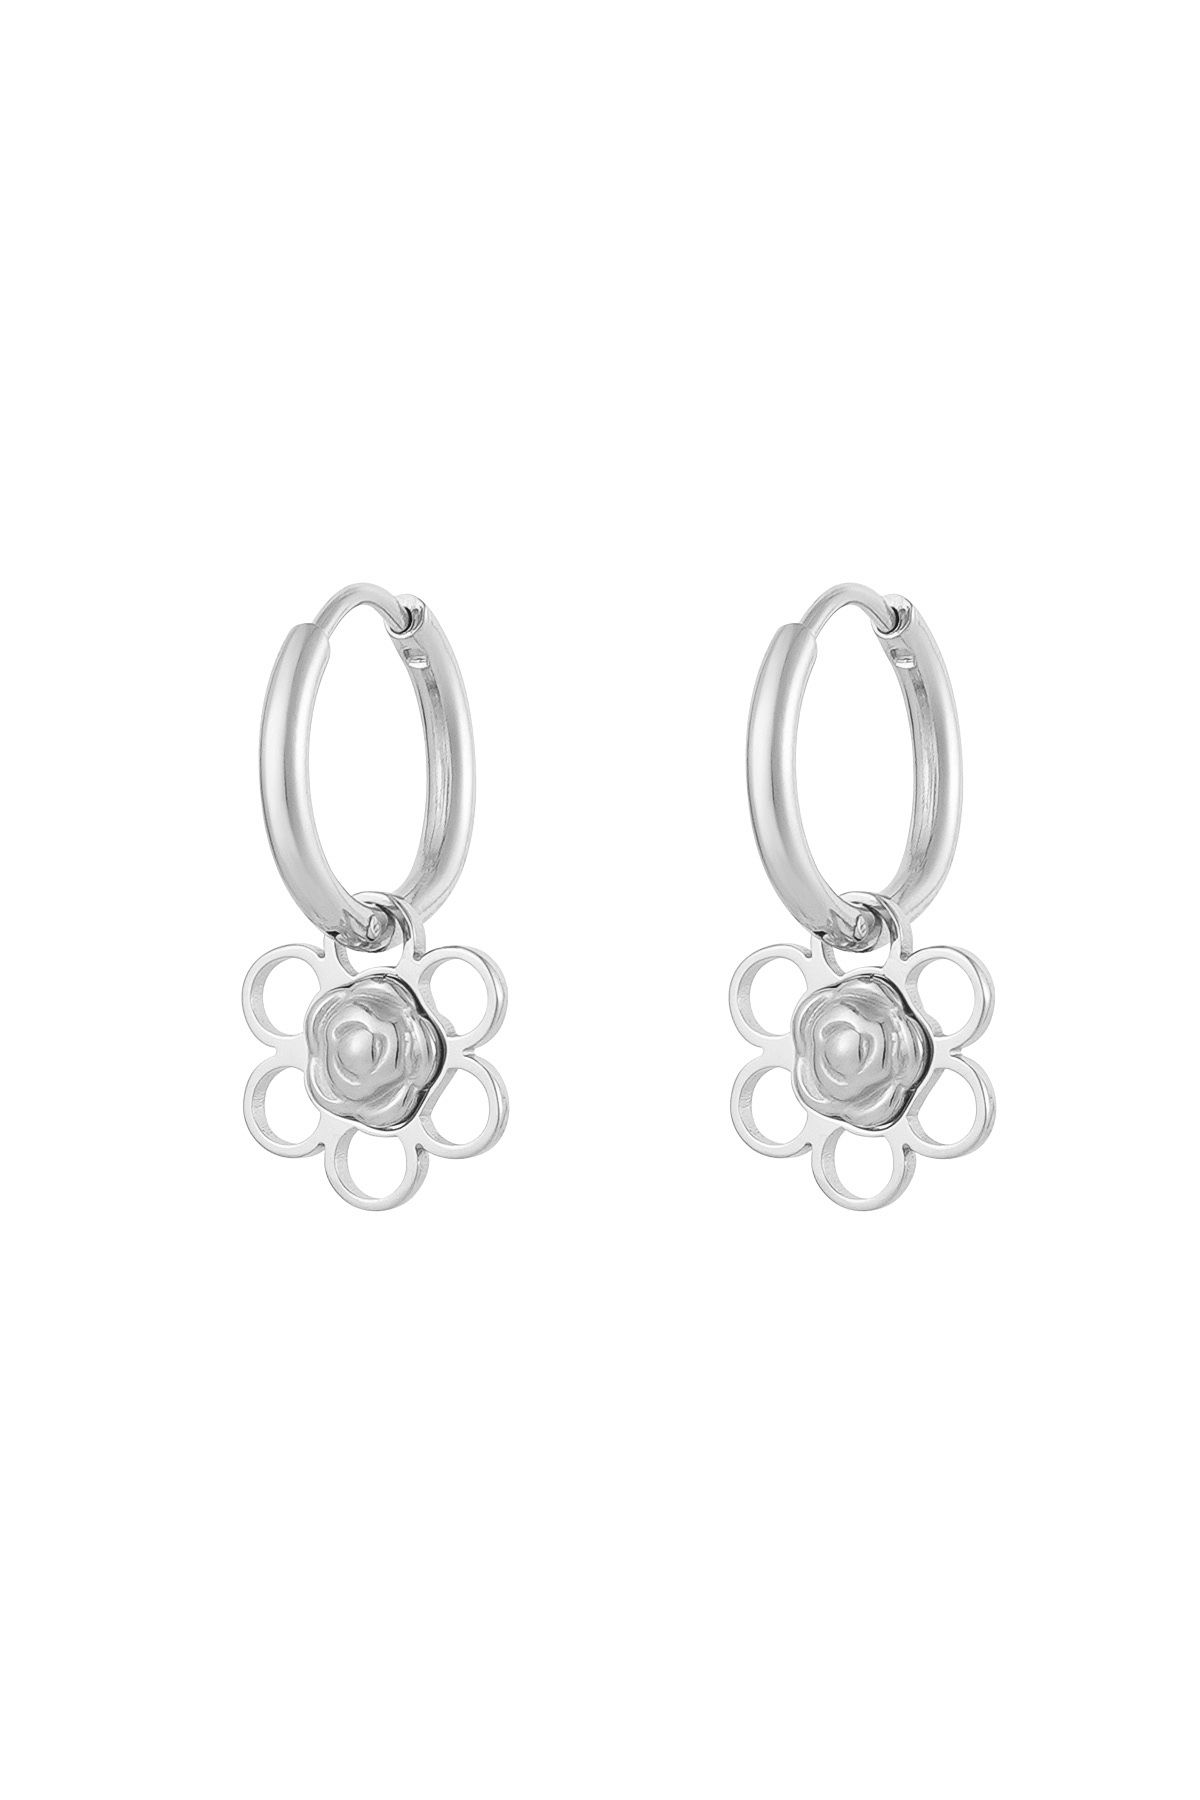 Boucles d'oreilles charm fleur/rose - argent